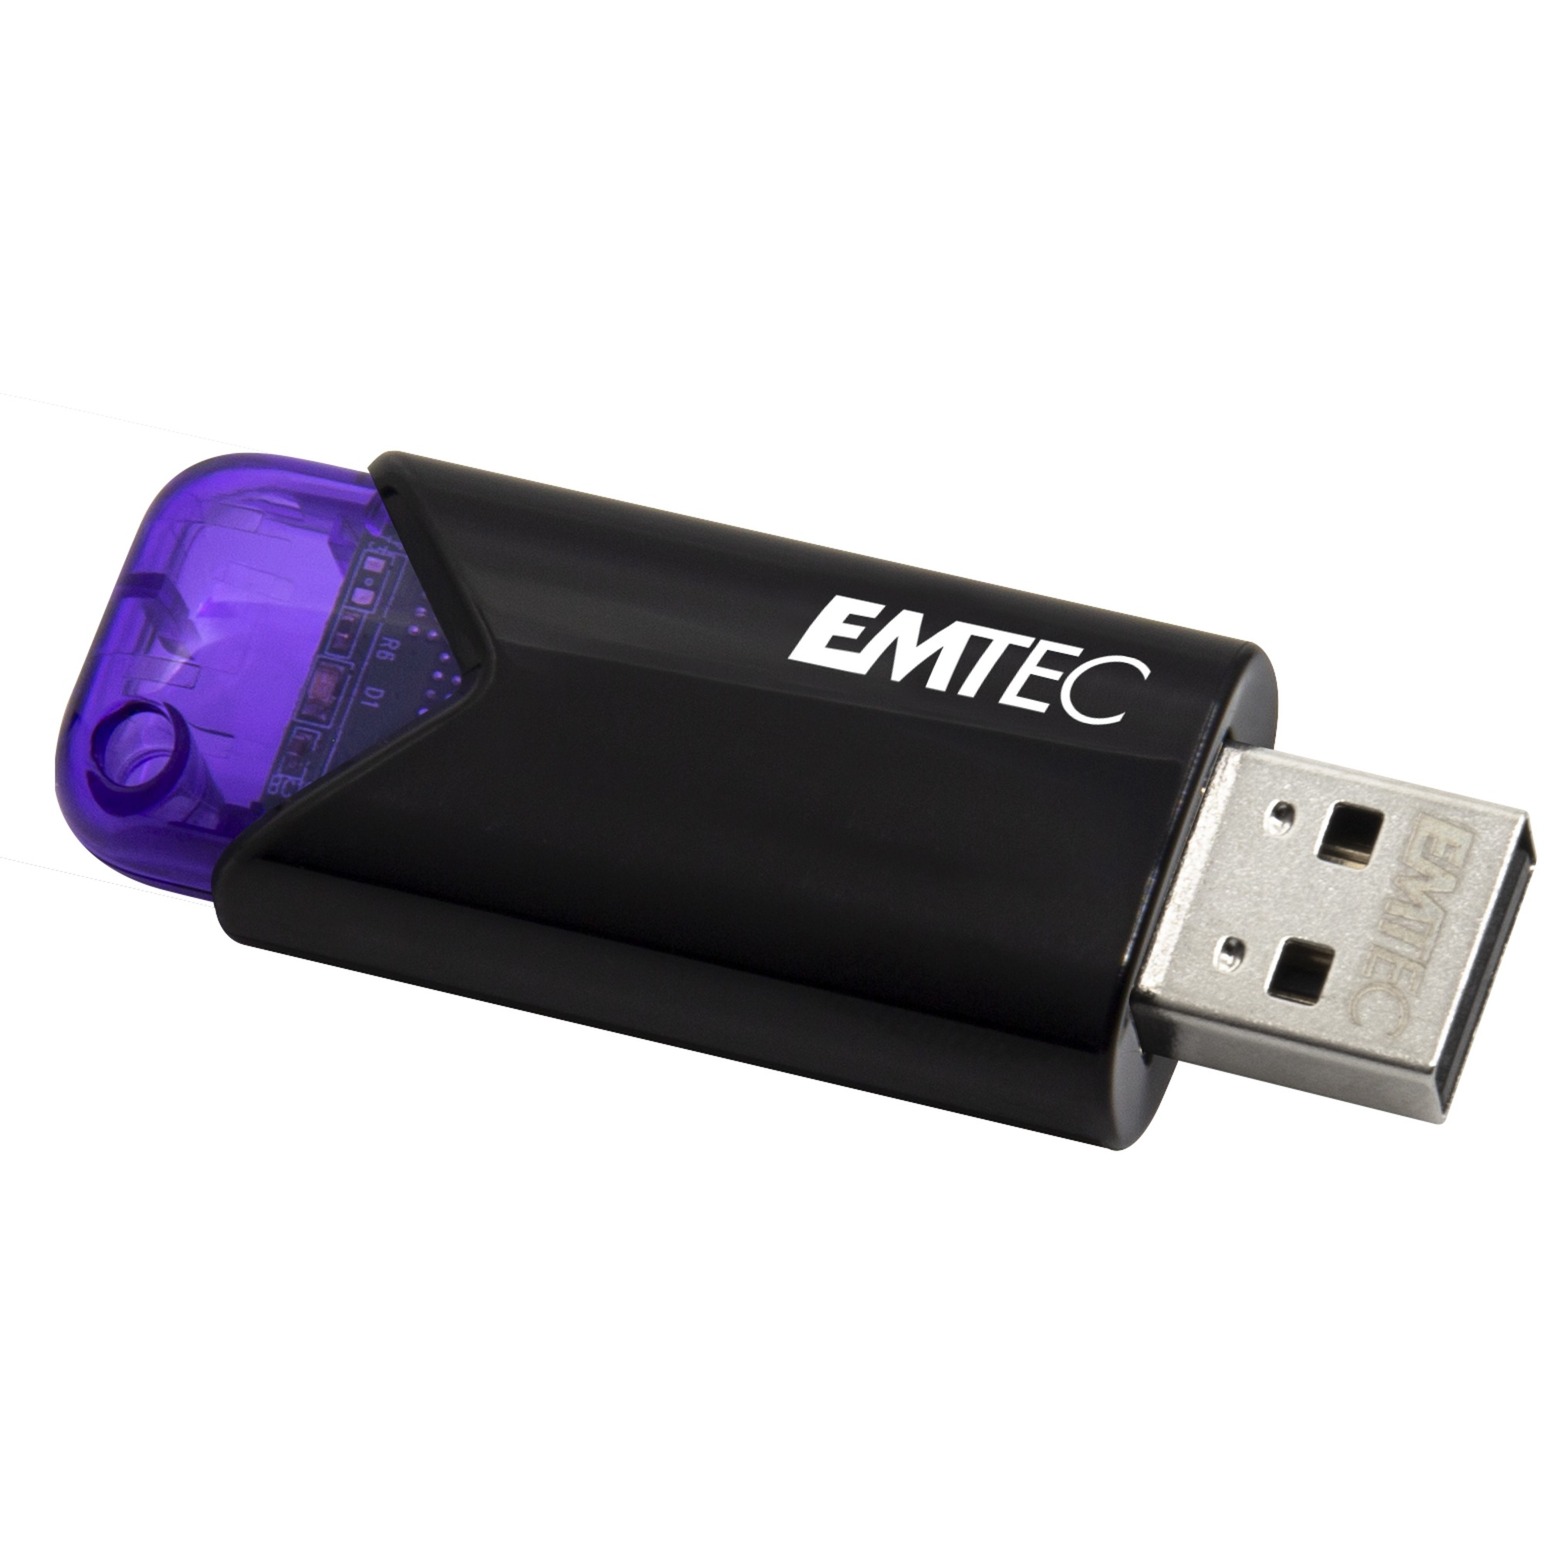 Image of Alternate - B110 Click Easy 128 GB, USB-Stick online einkaufen bei Alternate